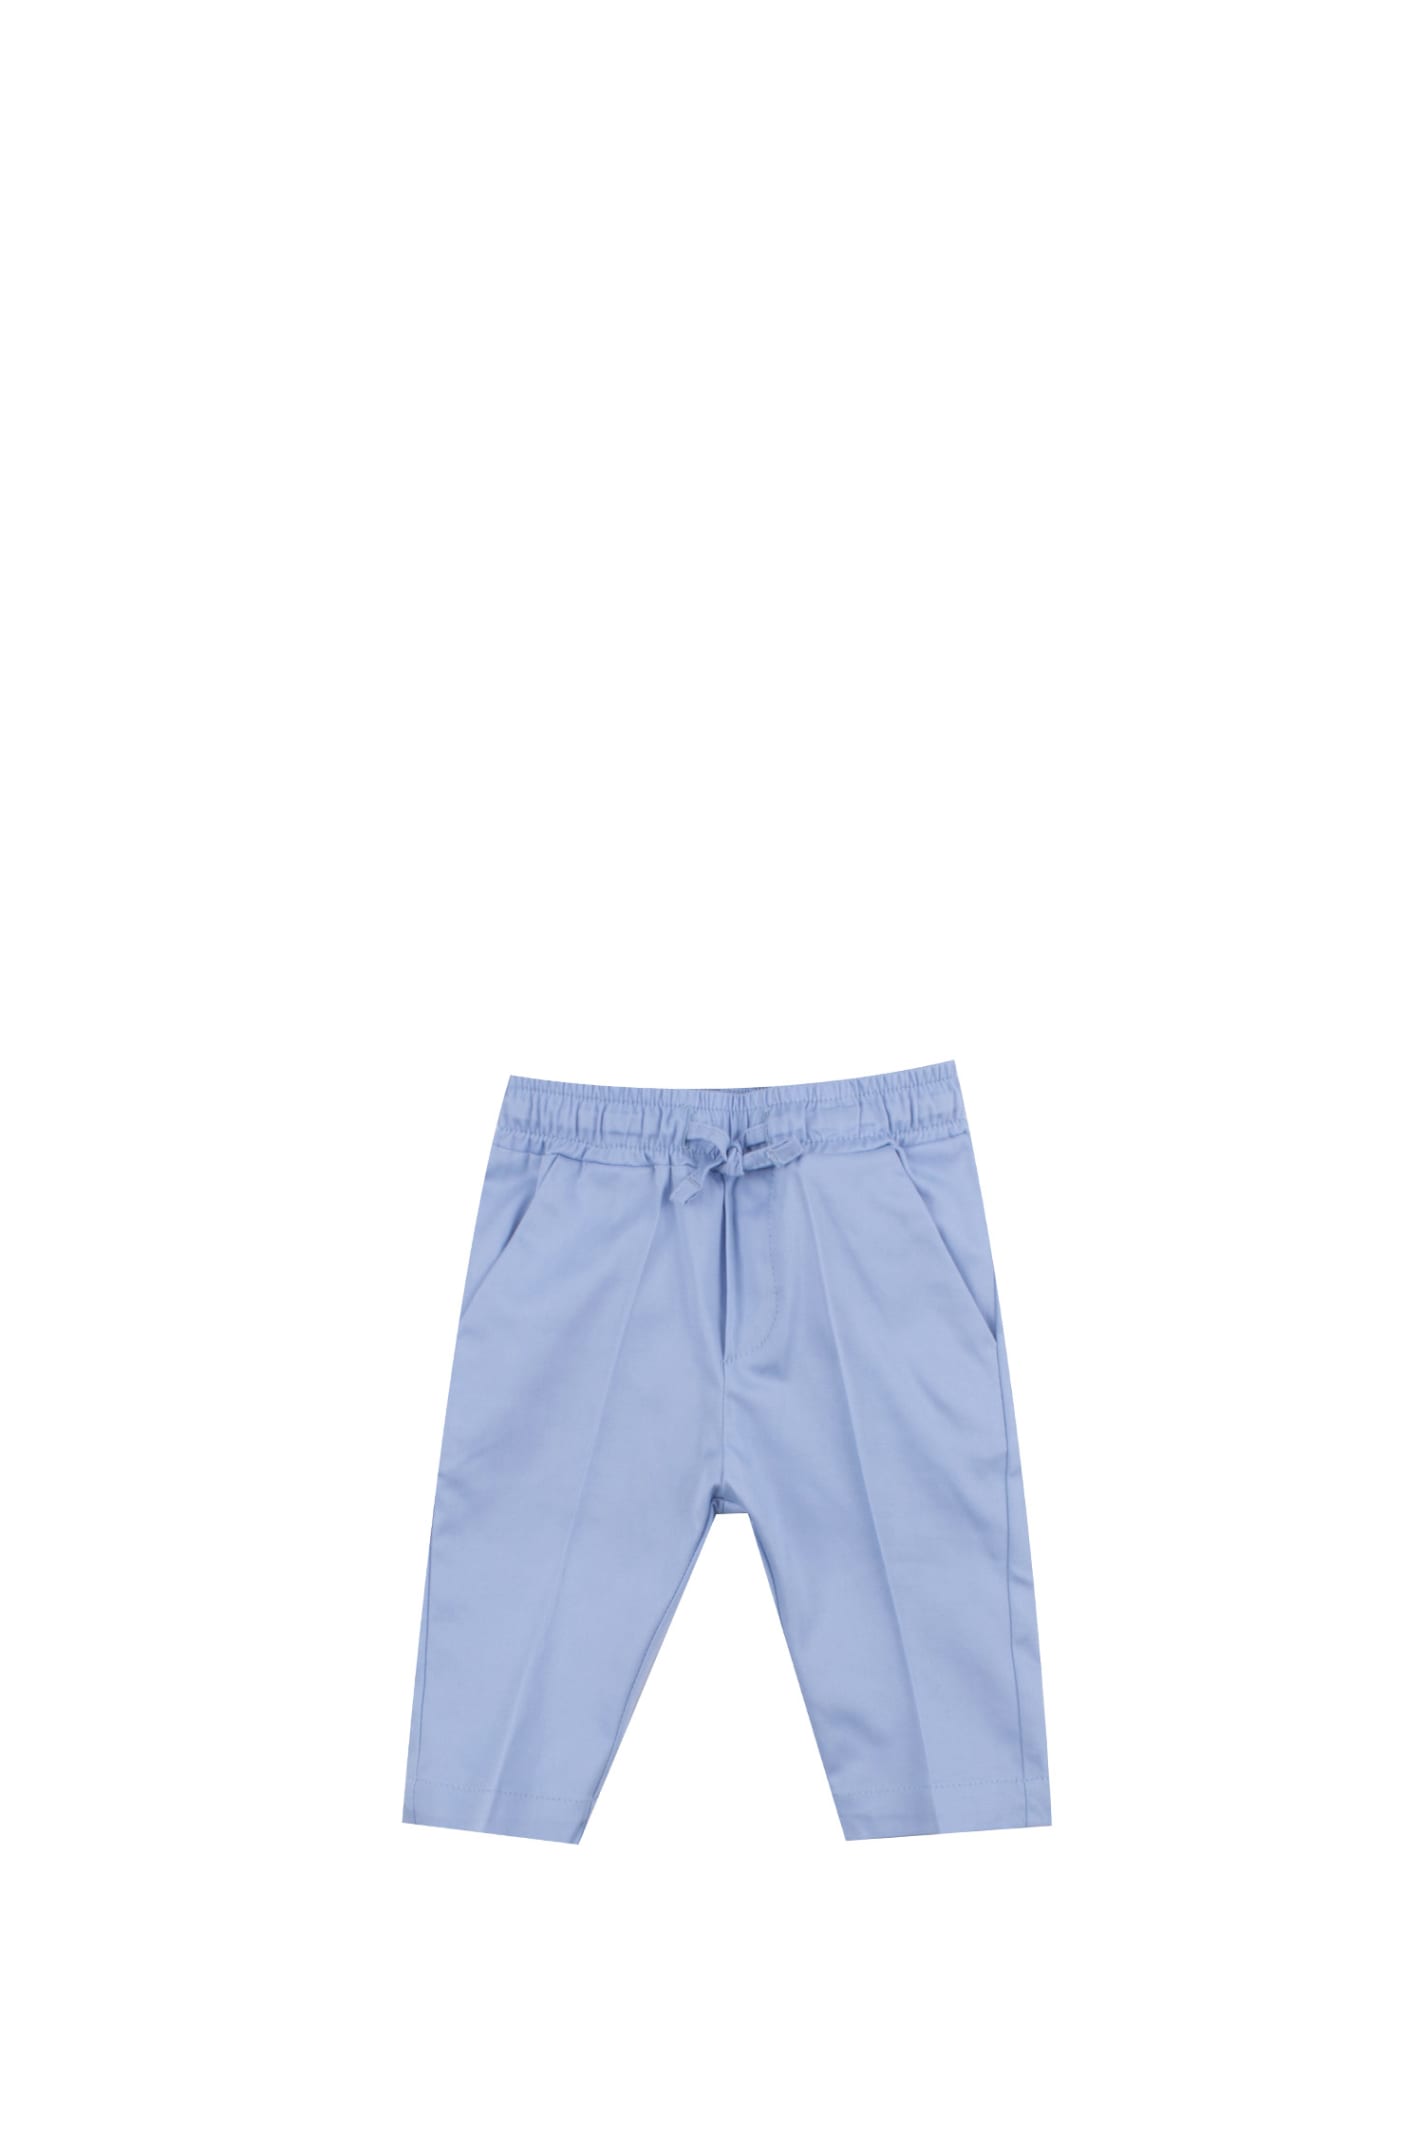 Shop Manuel Ritz Cotton Pants In Light Blue